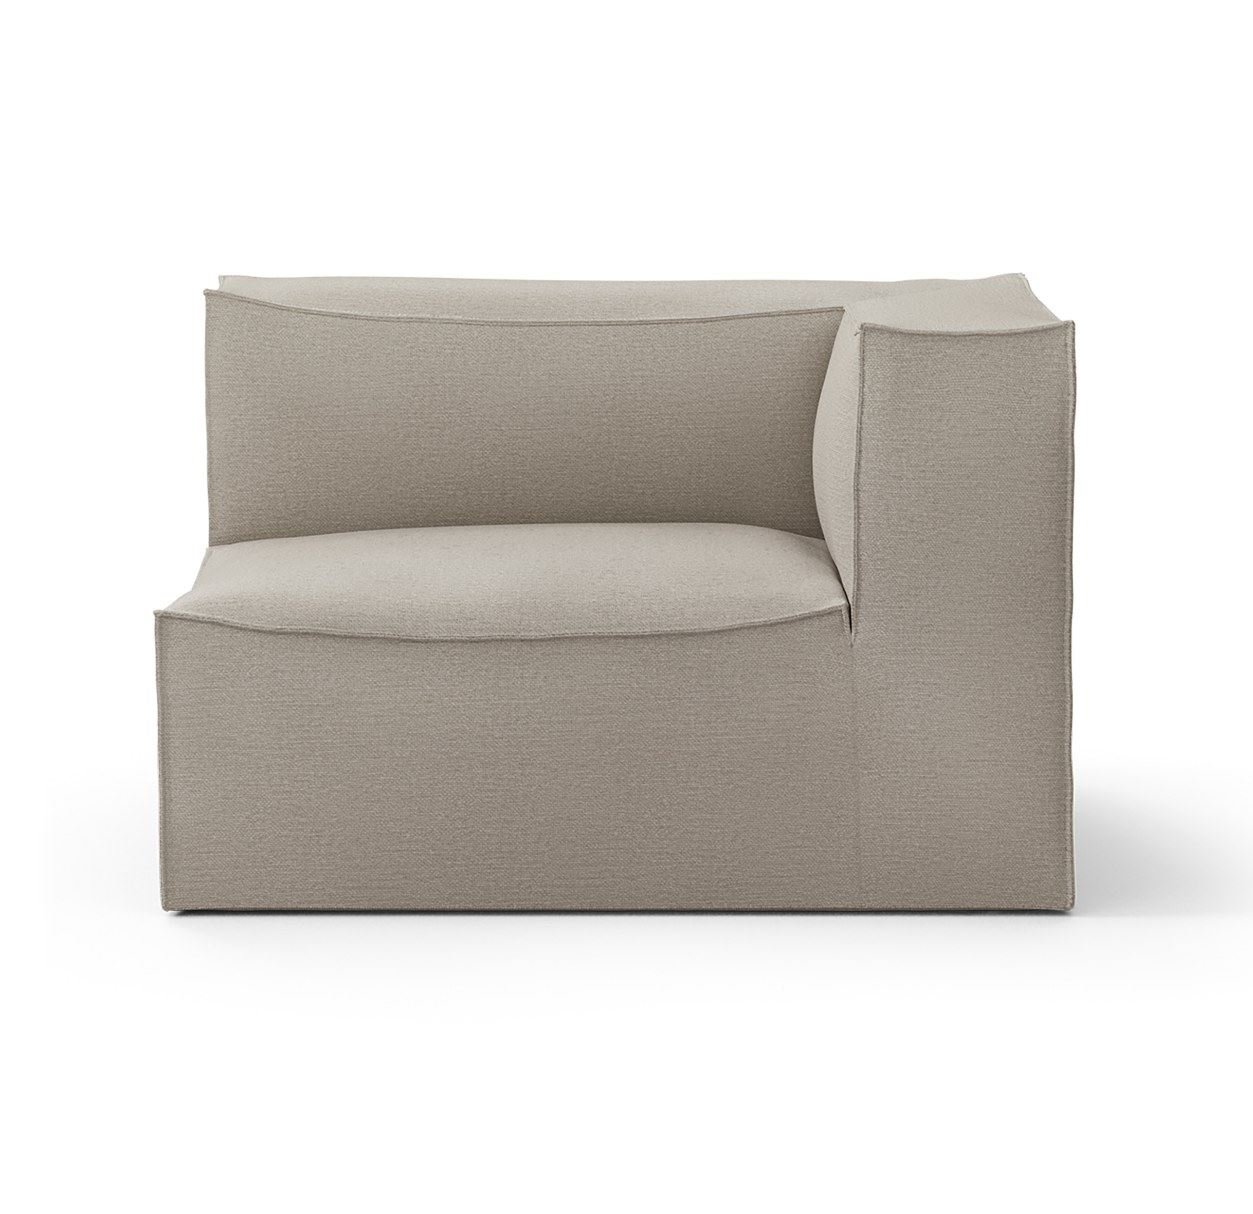 Billede af Ferm Living Catena Sofa Armrest Right S401 Cotton Linen 76x119 cm - Natural